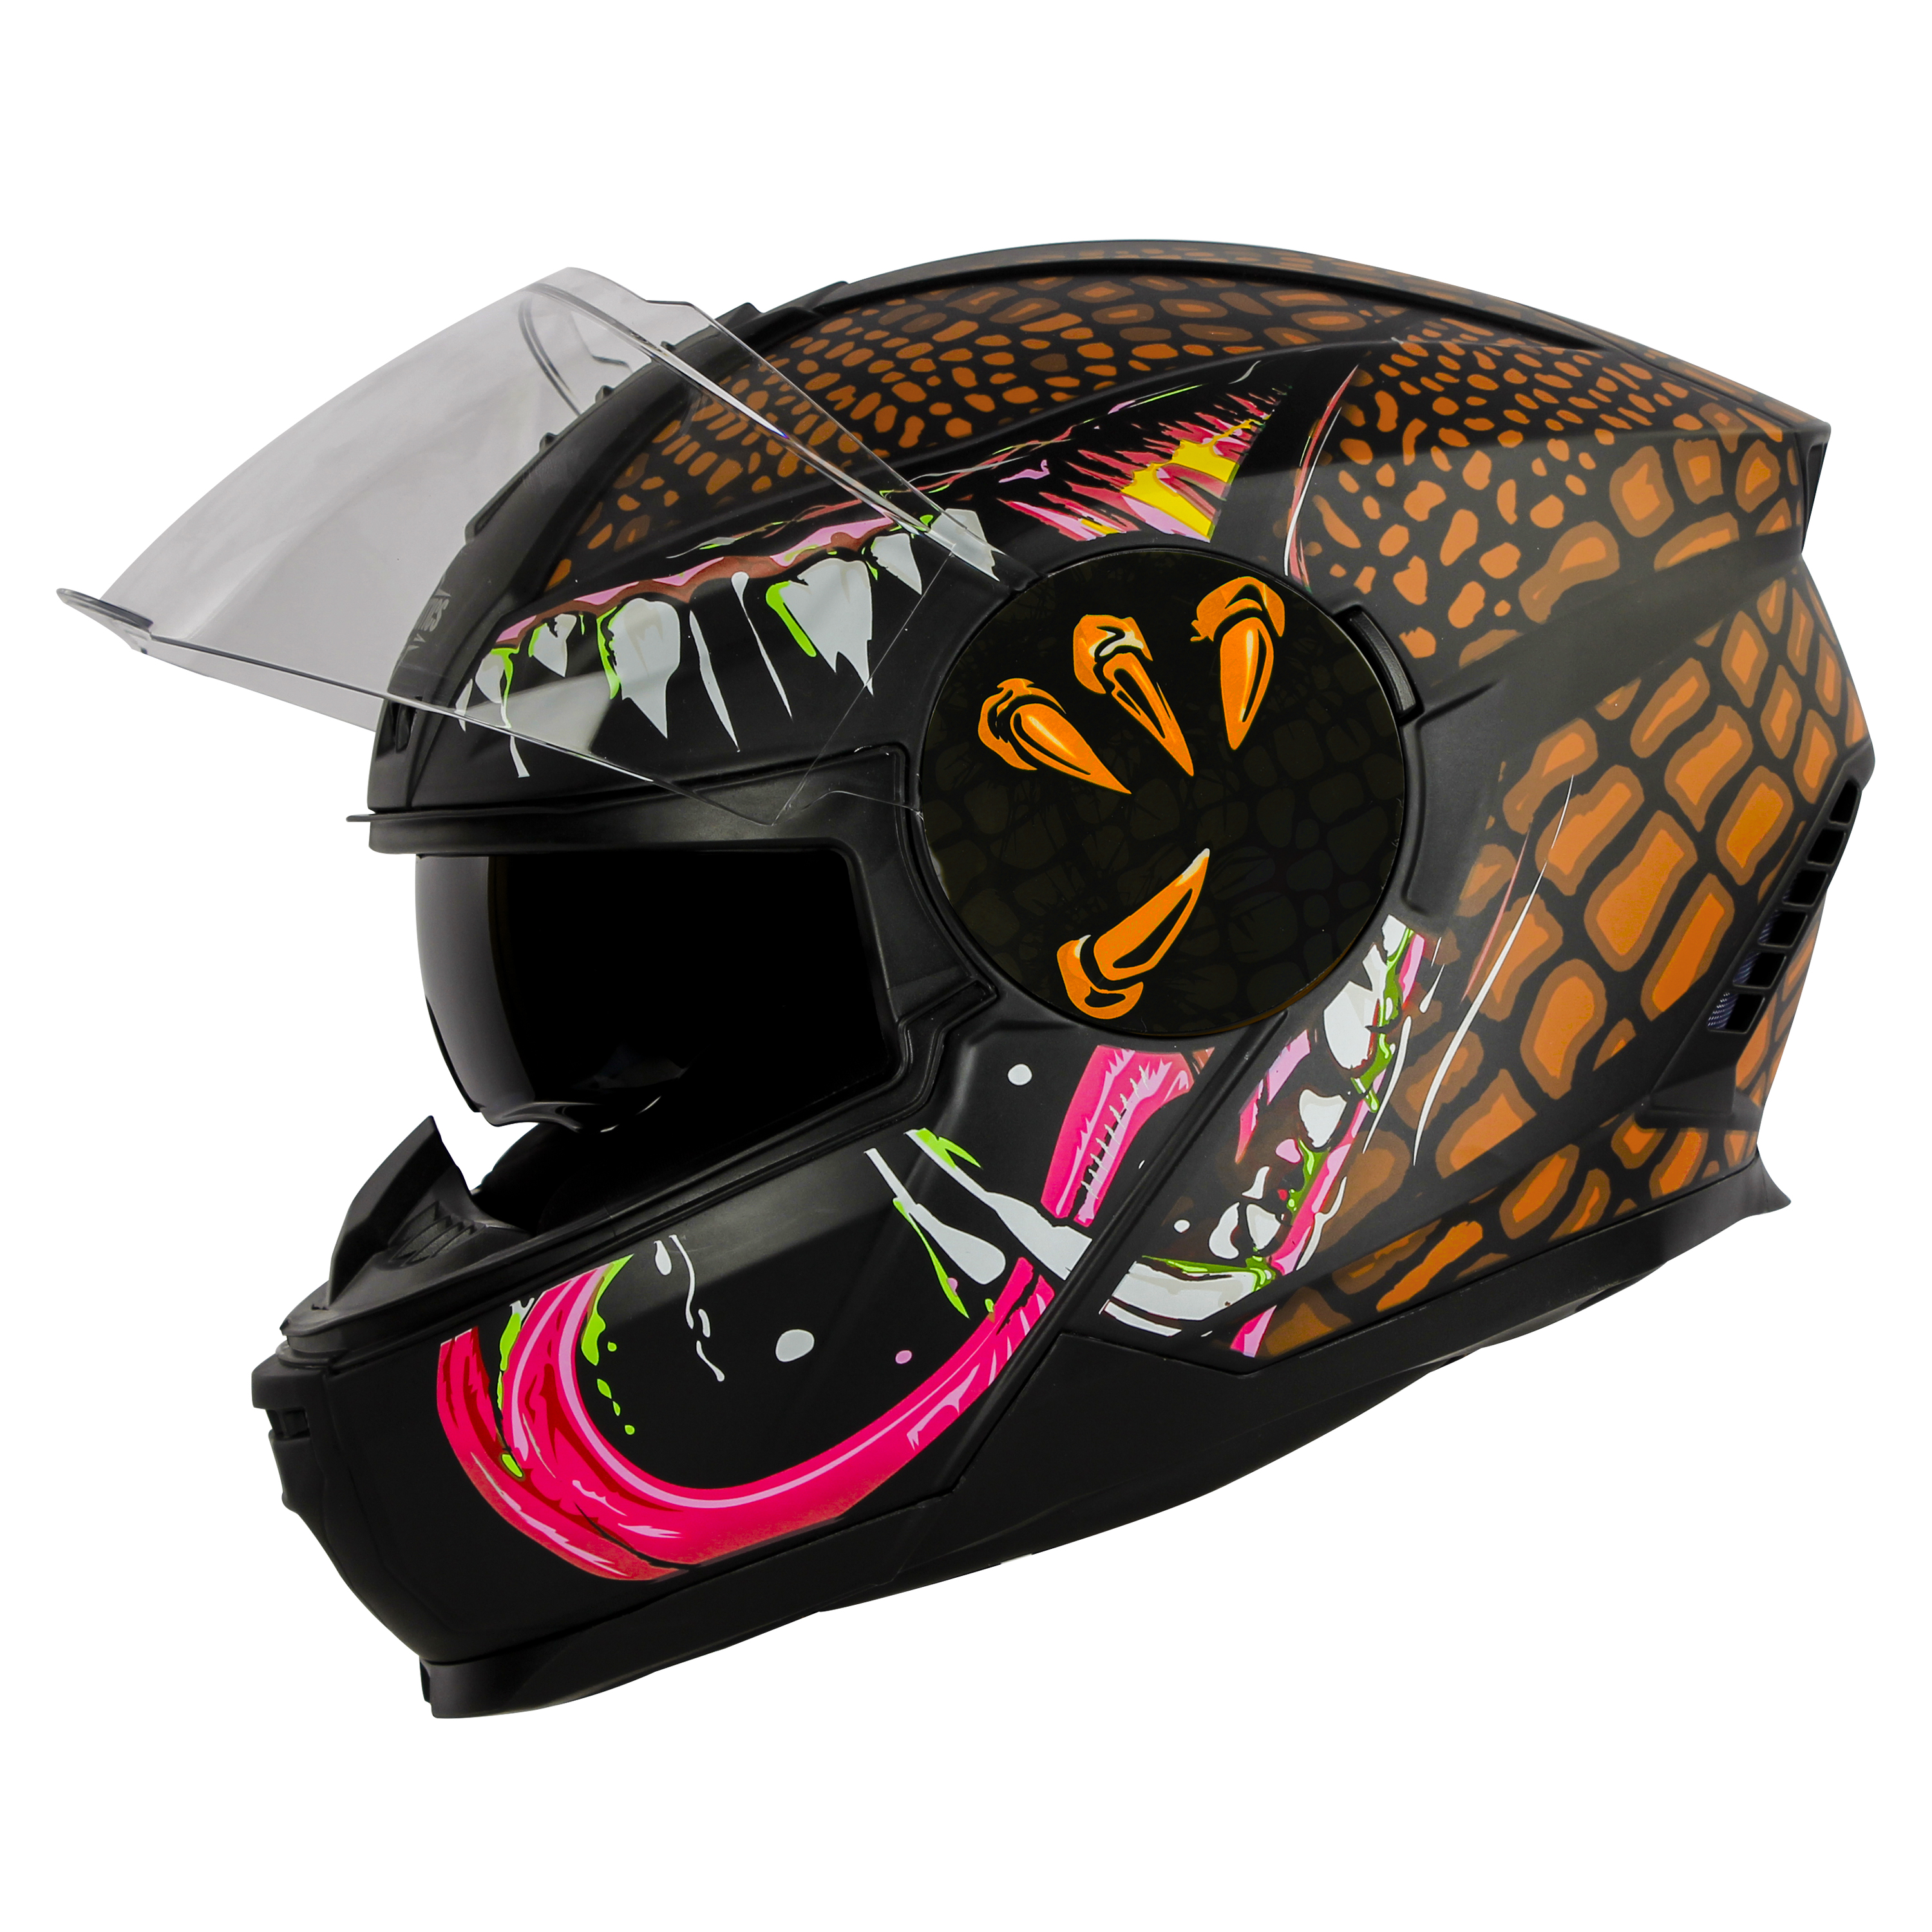 Steelbird SBH-40 Devil ISI Certified Full Face Helmet For Men And Women With Inner Smoke Sun Shield (Matt Black Orange)